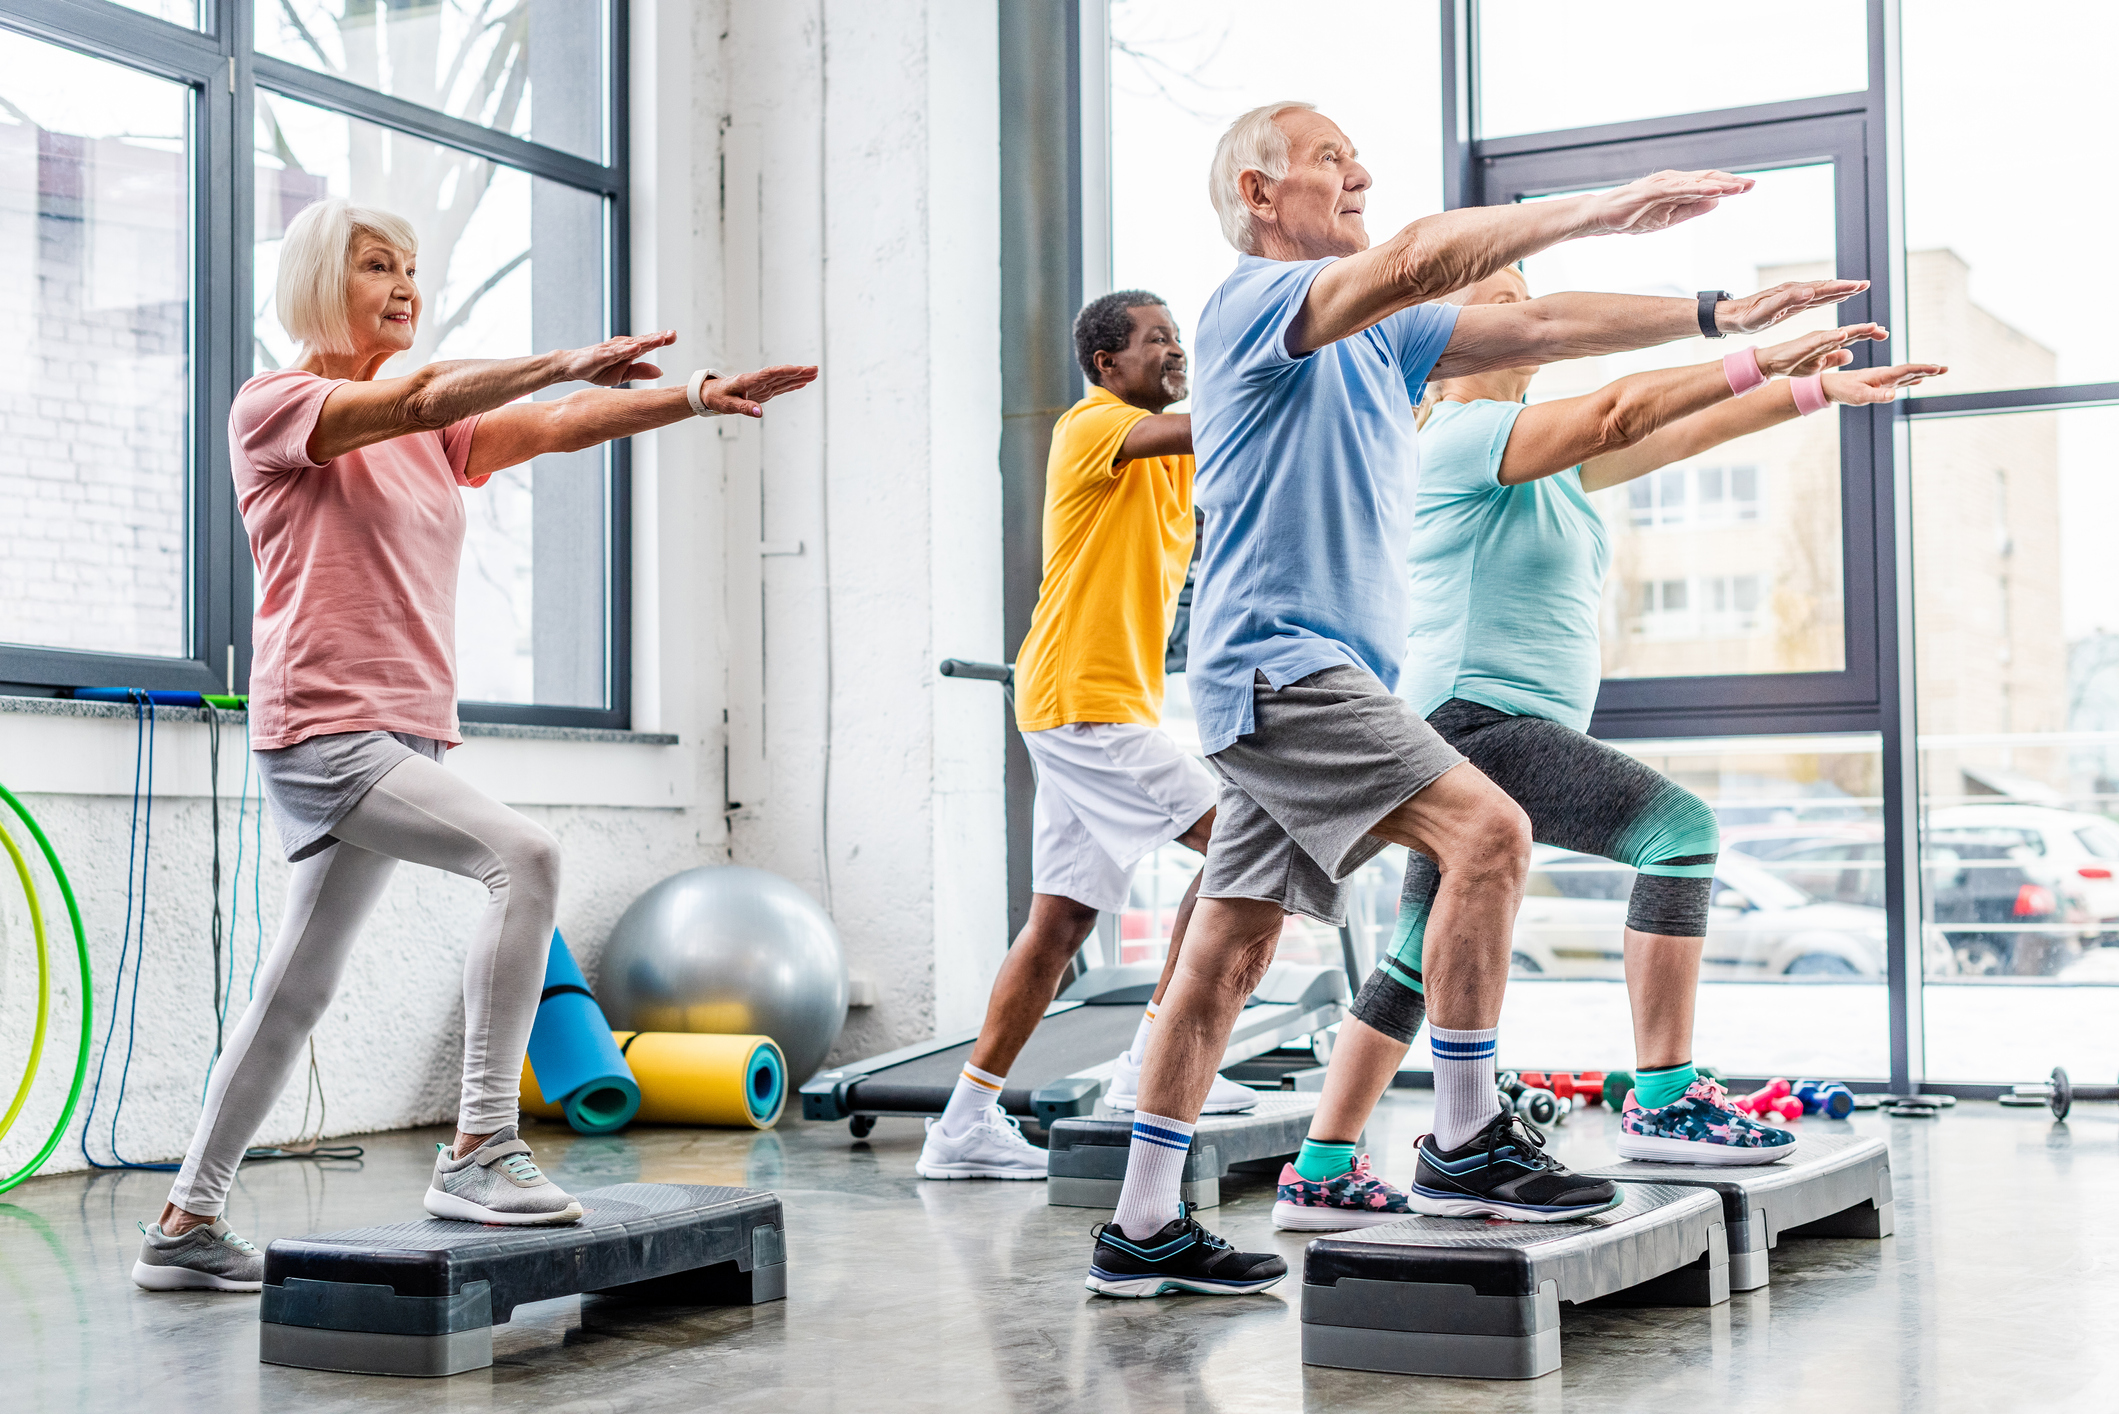 Physical finding. Занятие спортом. Пожилые люди занимаются спортом. Фитнес для пожилых. Пенсионеры занимаются спортом в зале.